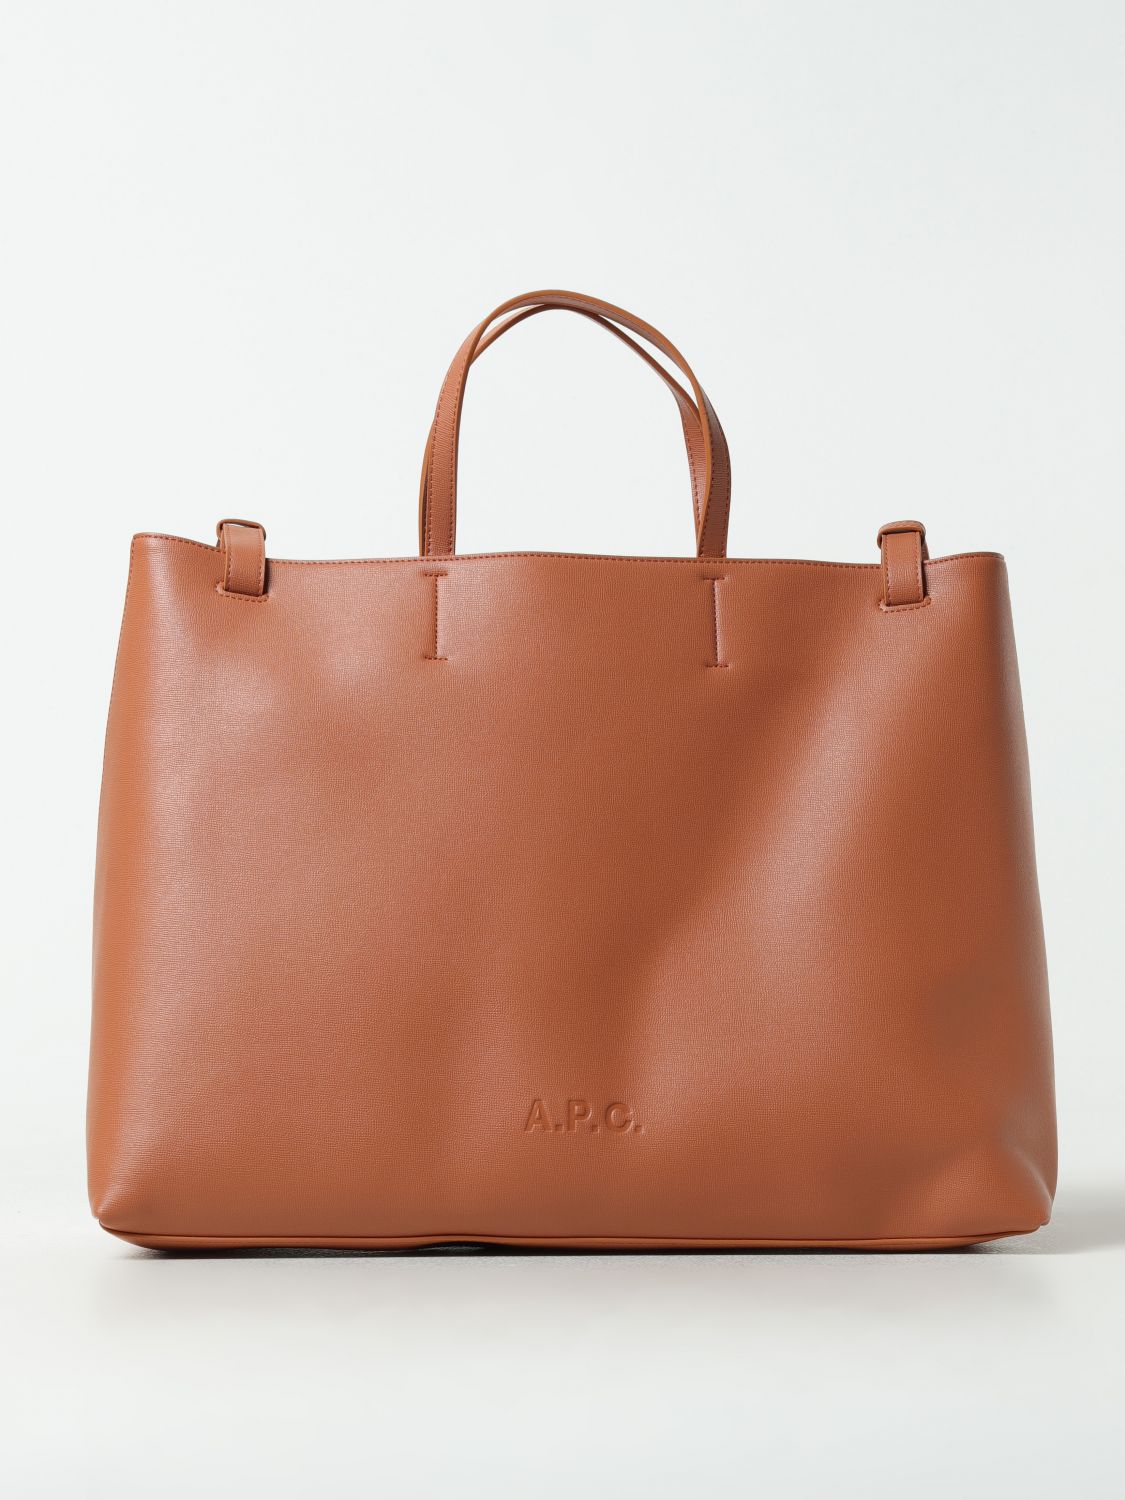 Apc Handbag A.p.c. Woman Color Beige